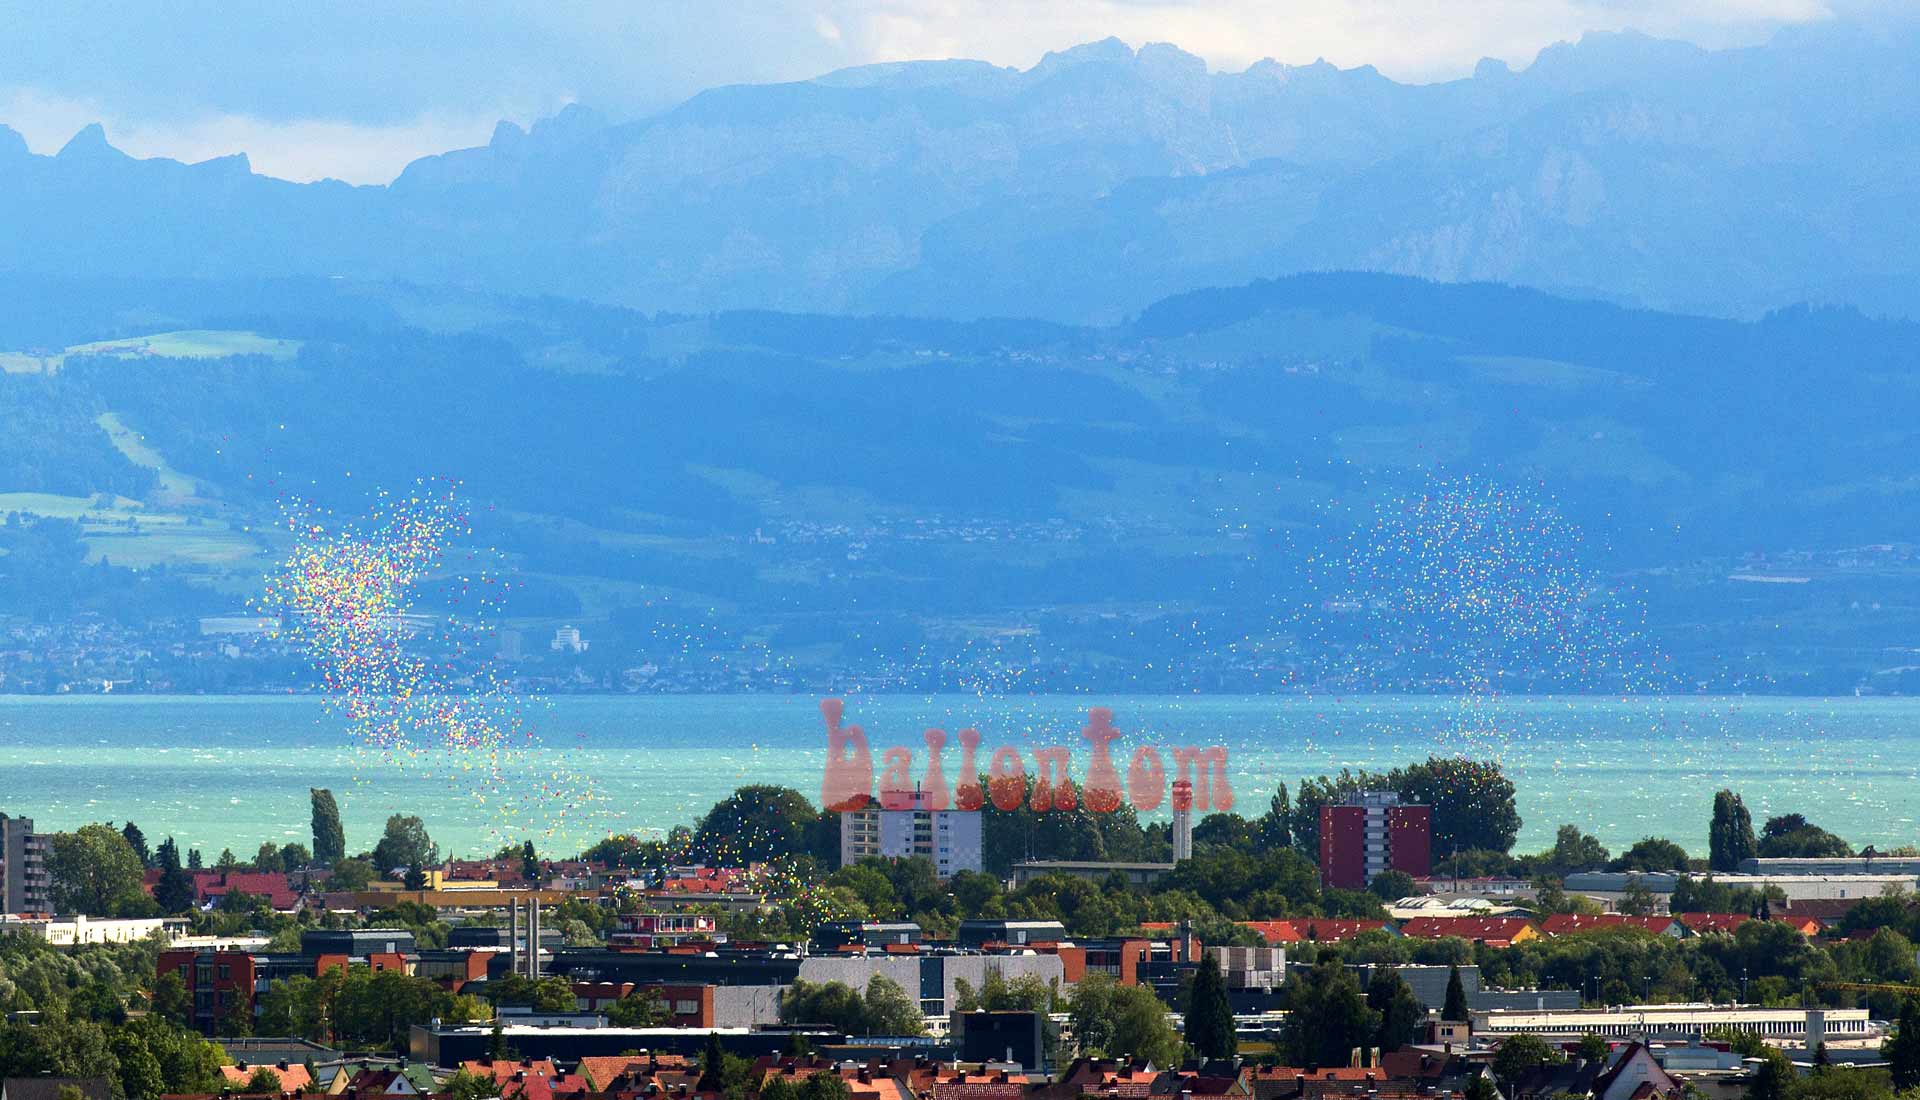 Ballonstart zur Jubiläumsfeier für ZF Friedrichshafen mit 25.000 Ballons von ballontom